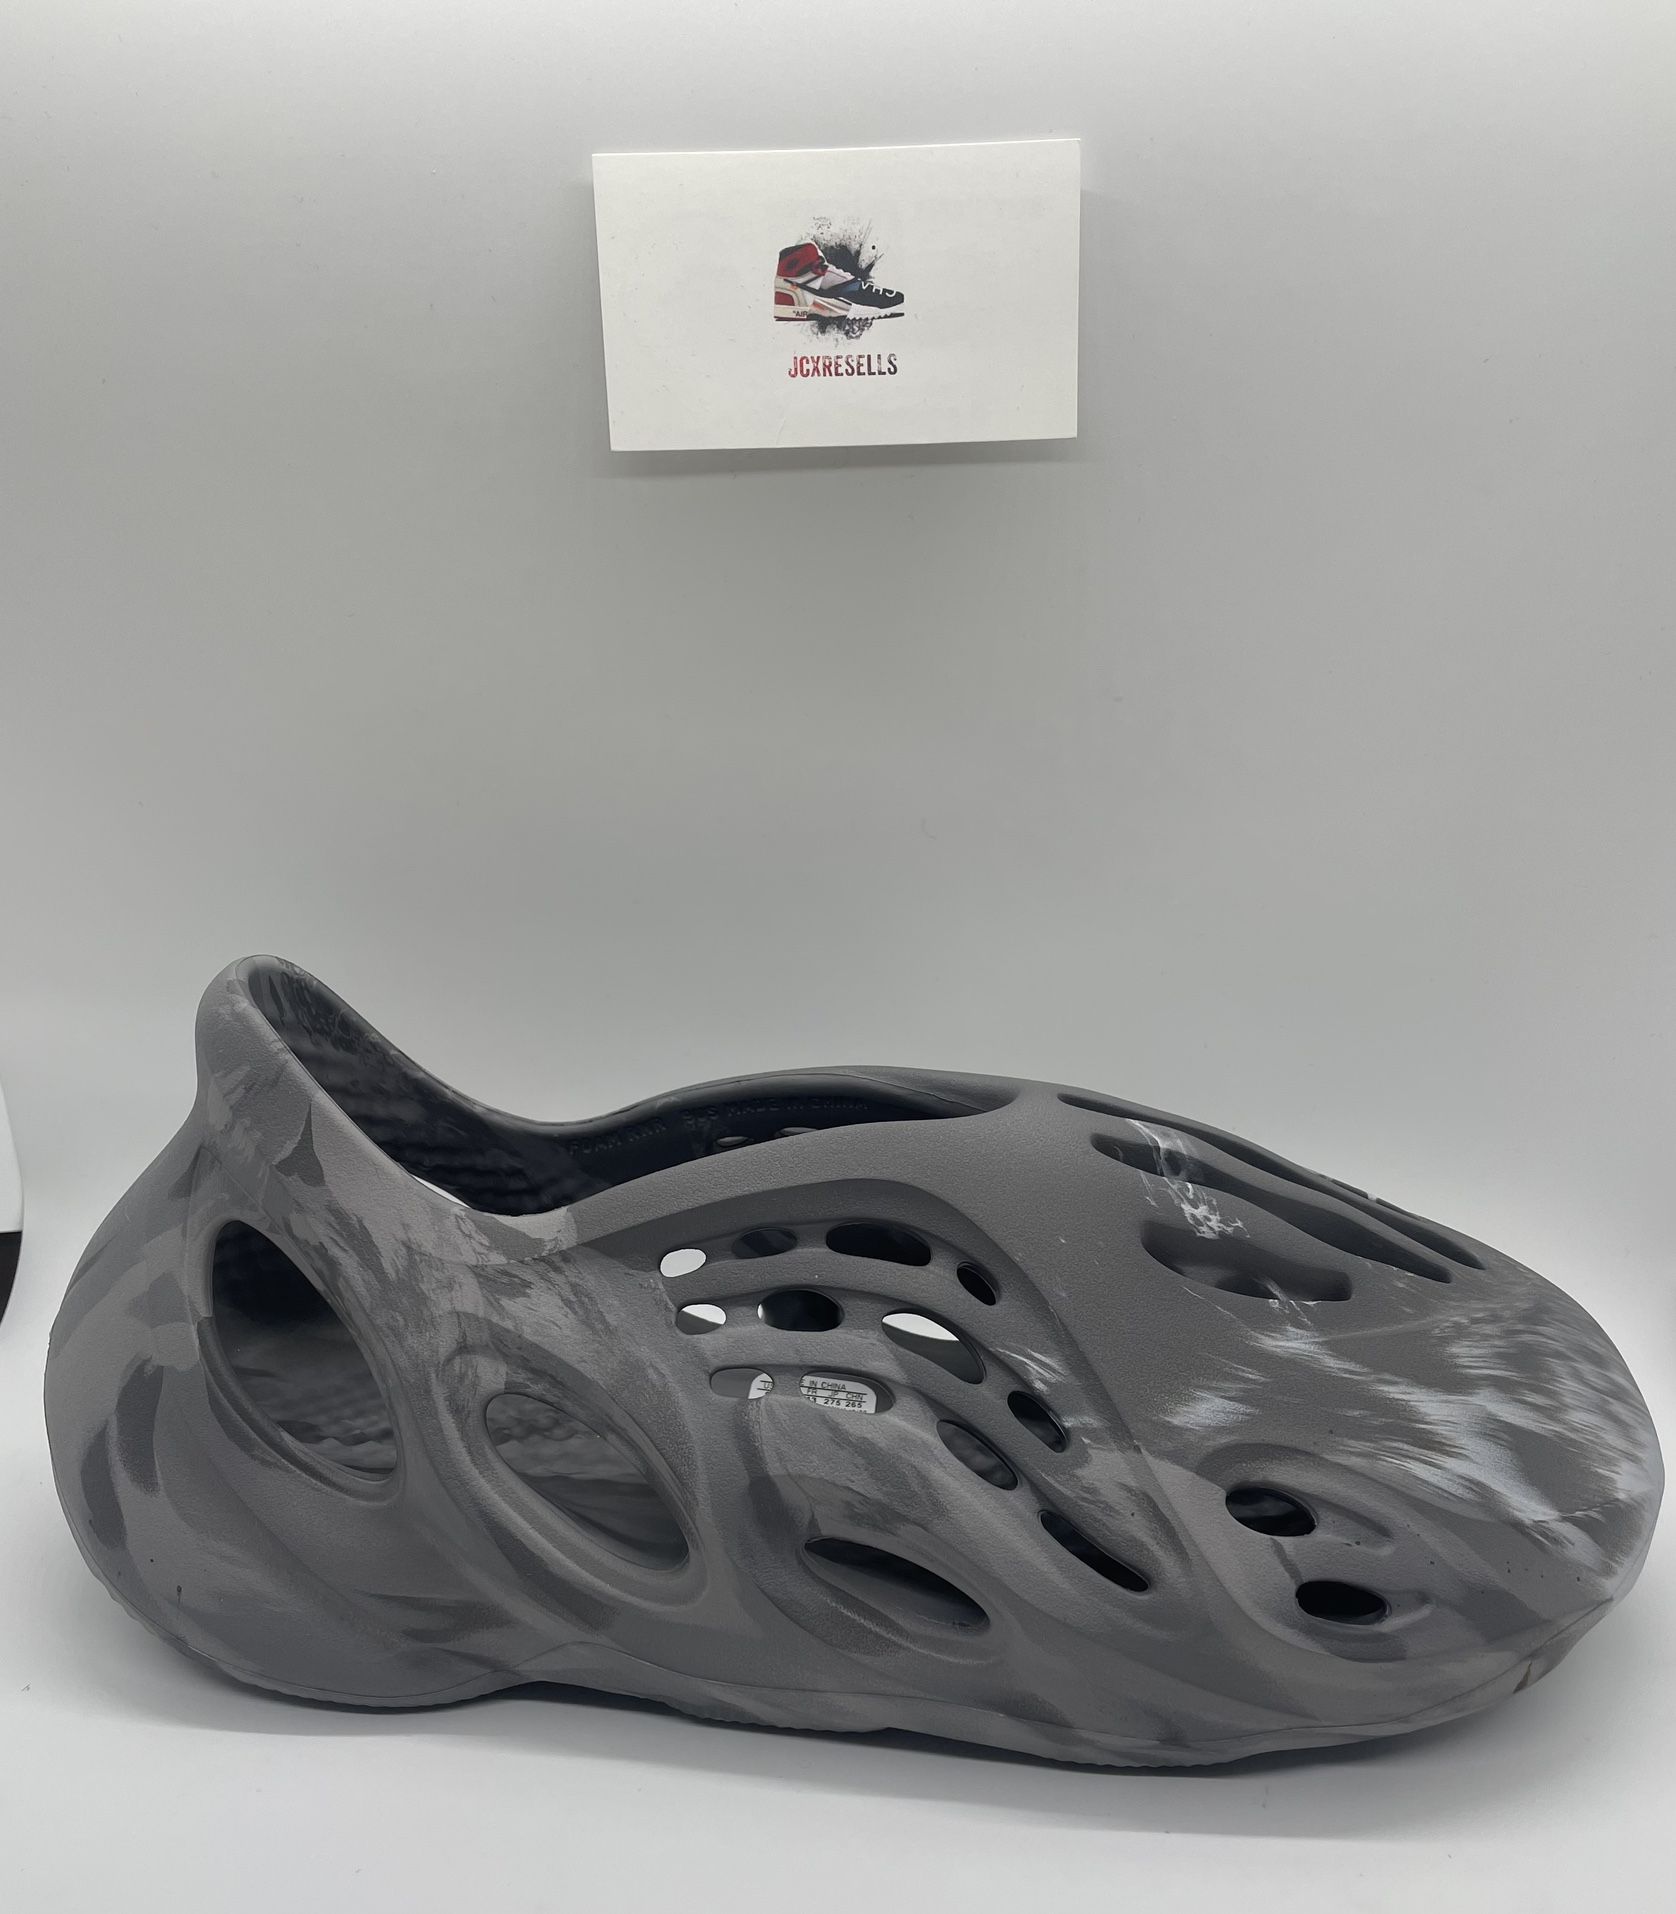 Adidas Yeezy Foam Runner “MX Granite” 🌫️